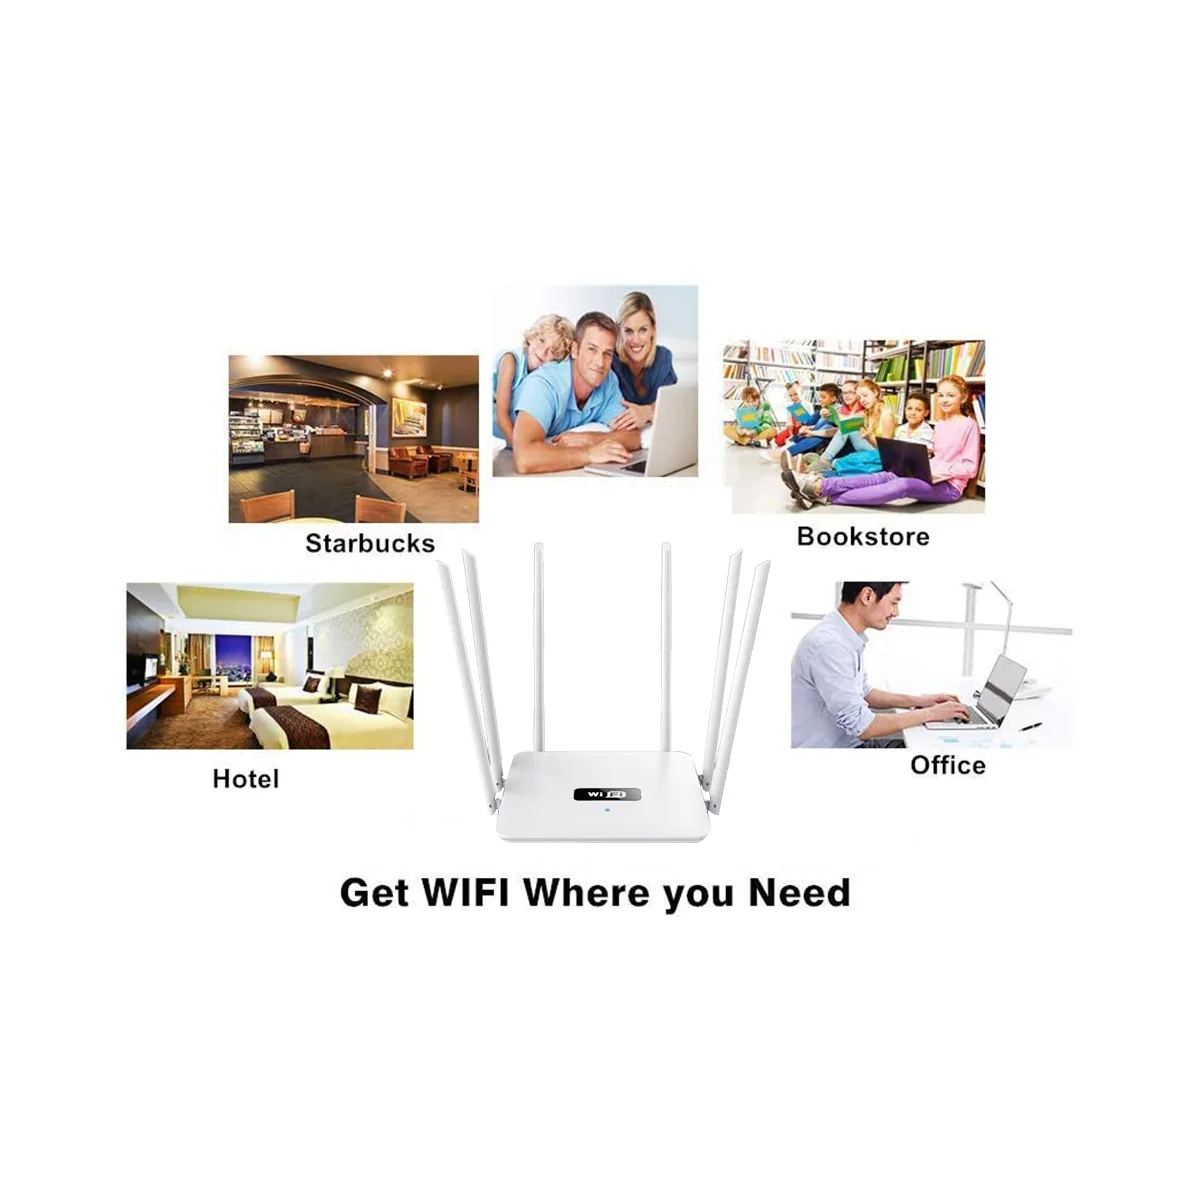 6 Антенн WiFi Маршрутизатор Беспроводной Маршрутизатор 2,4 G 300 Мбит/с точка доступа/режим набора номера WiFi Ретранслятор 6 Антенн с высоким коэффициентом усиления для компании (штепсельная вилка США)